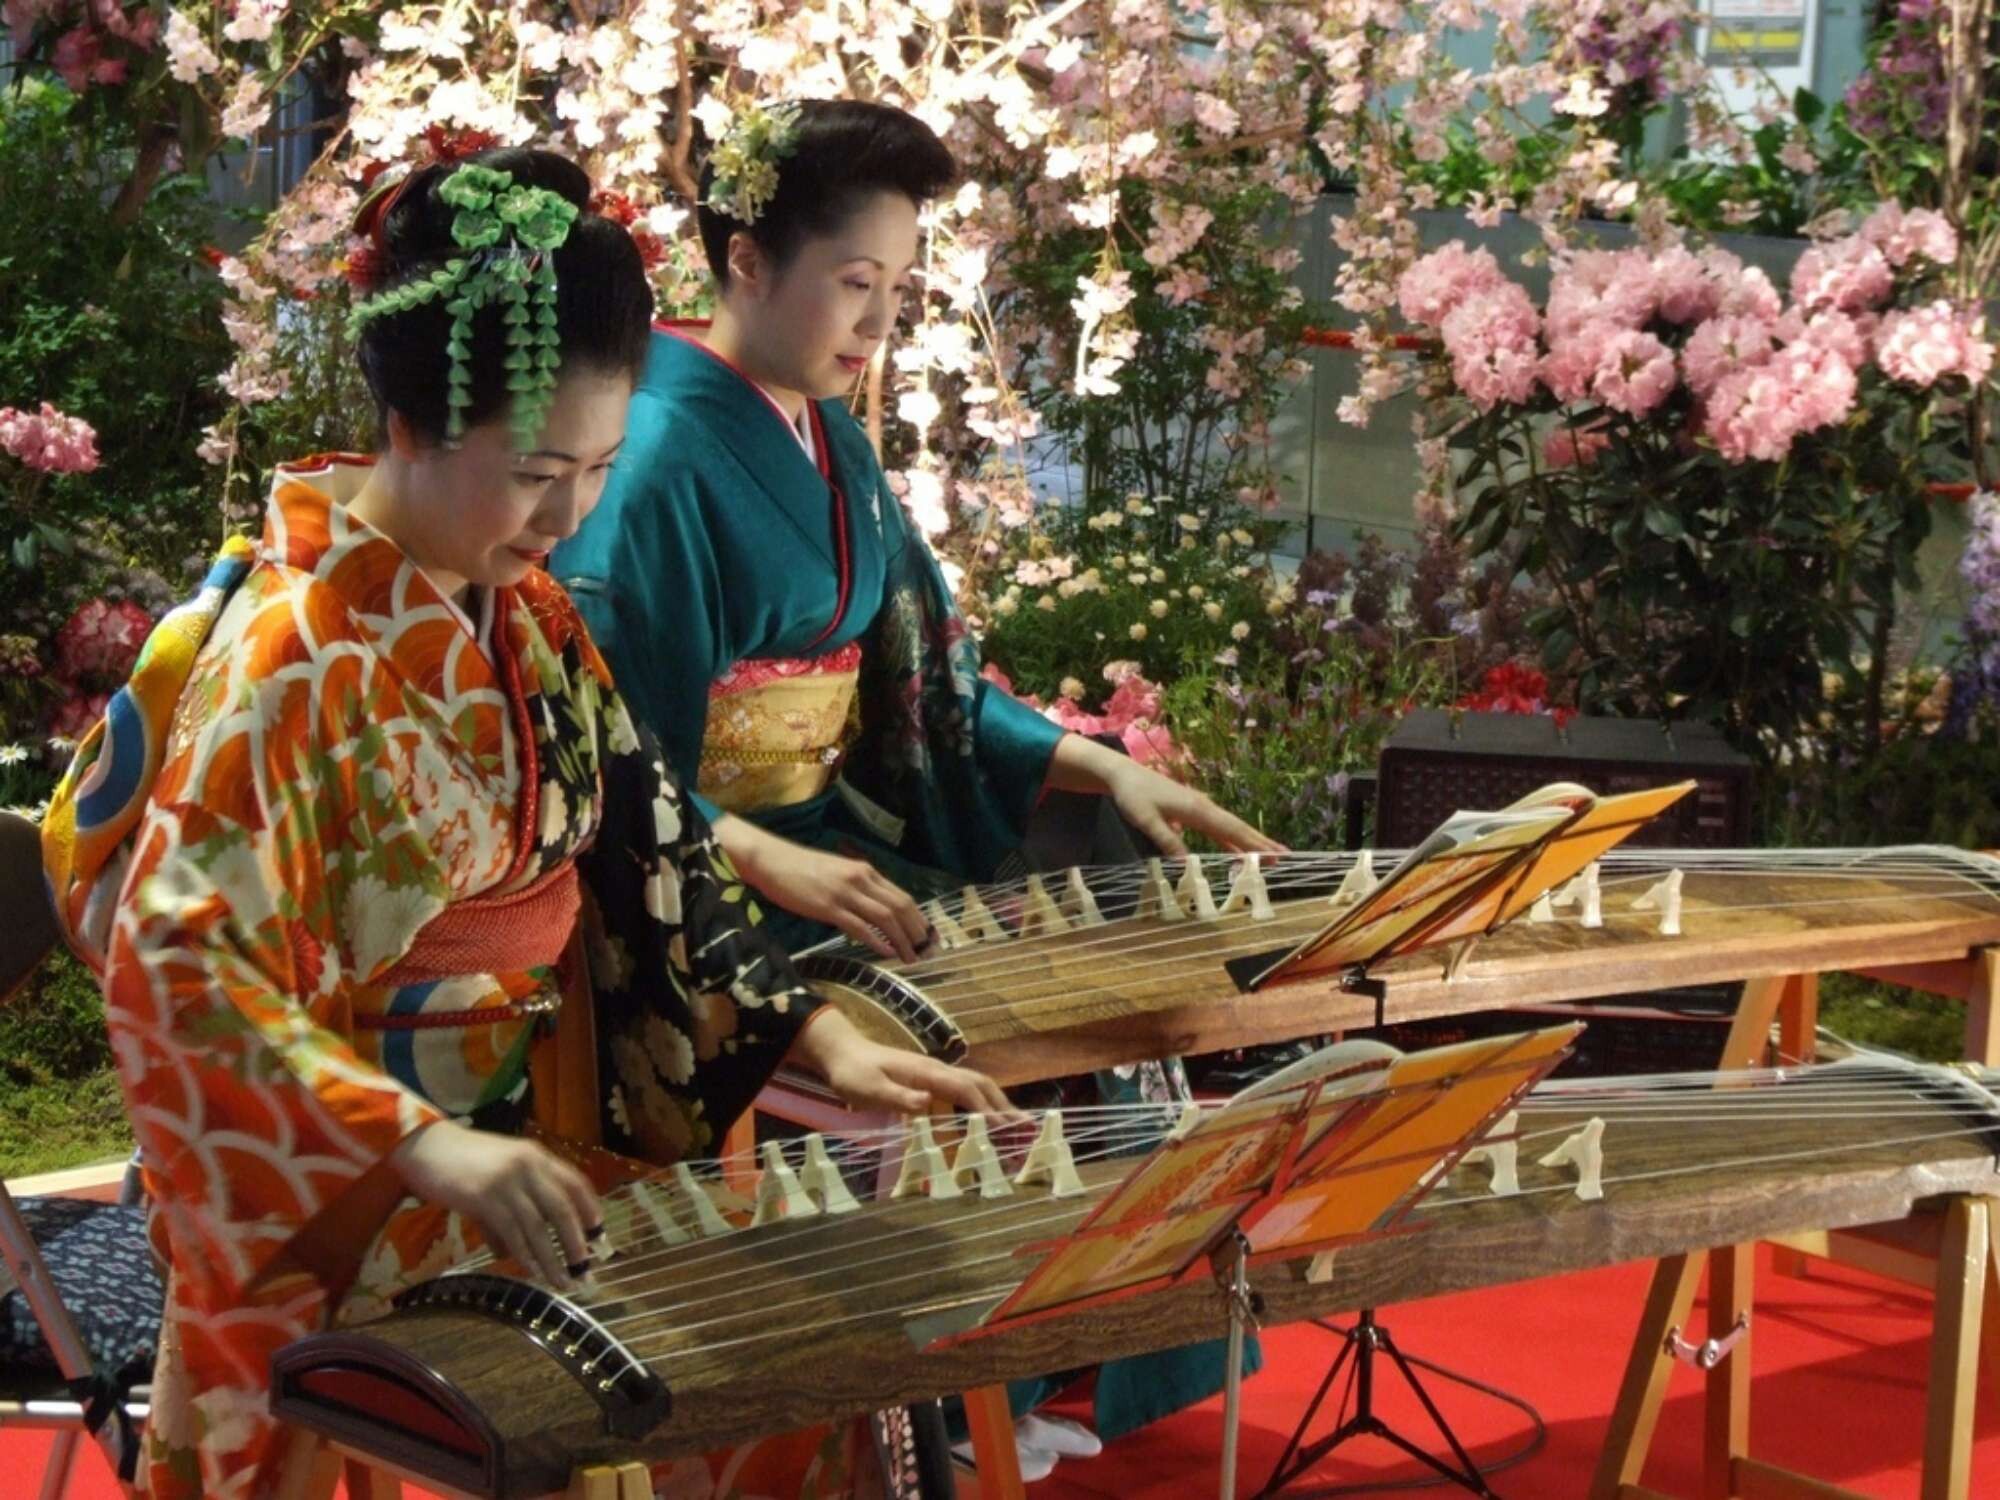 Как в японии называют человека. Кото музыкальный инструмент Япония. Национальный инструмент Японии бива. Японский музыкальный инструмент сямисэн. Японские народные инструменты.